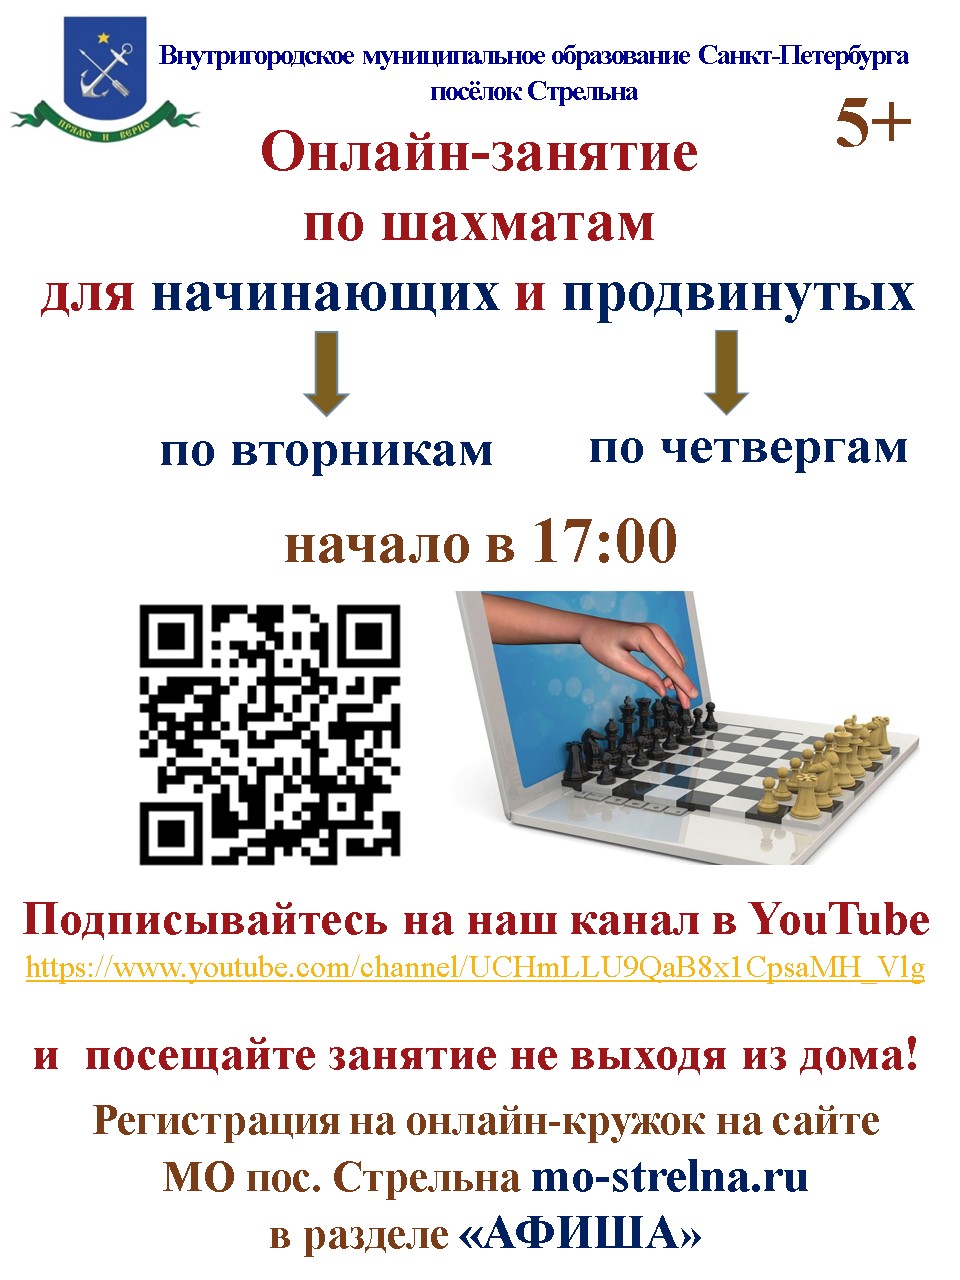 Шахматный кружок онлайн